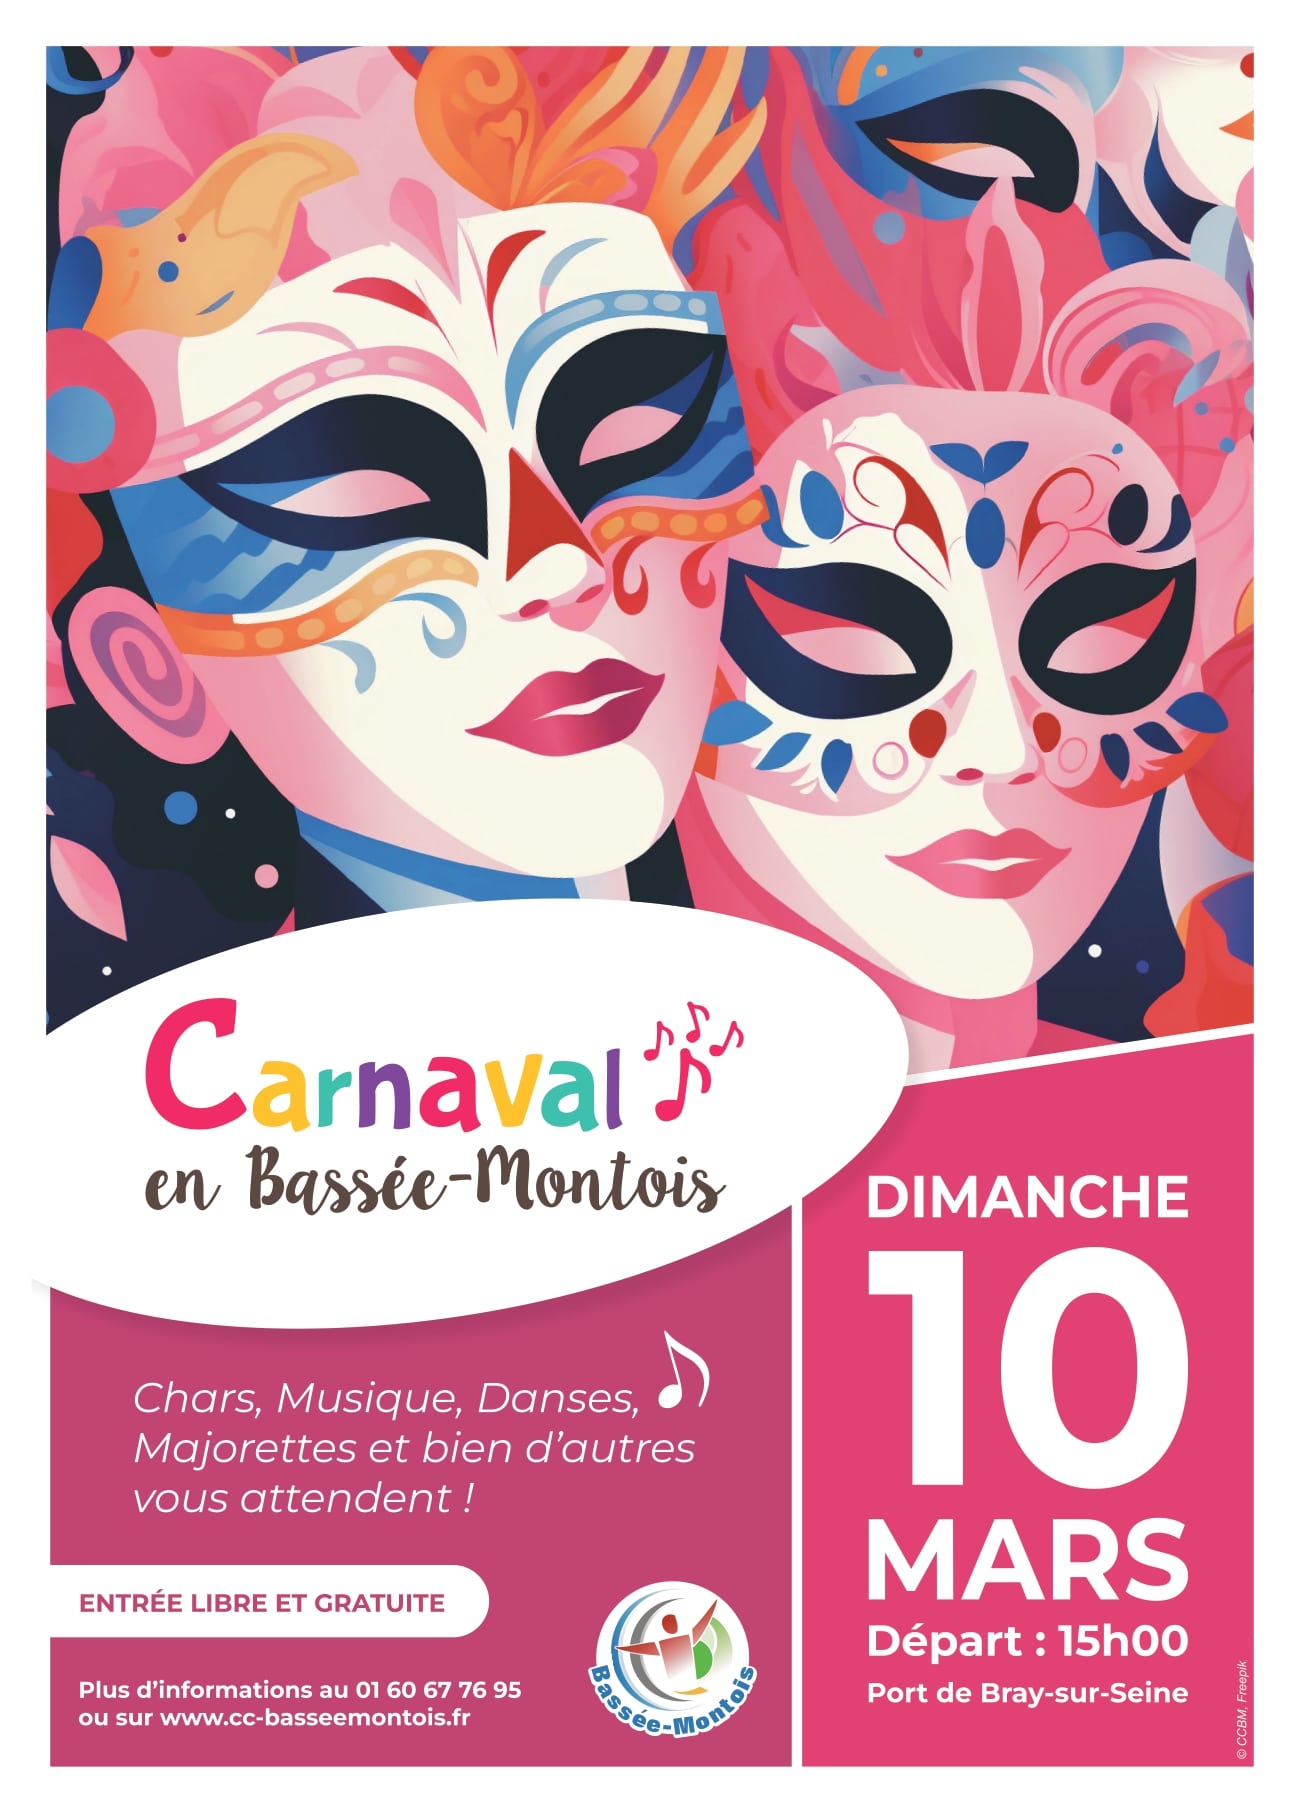 Carnaval de la Bassée-Montois